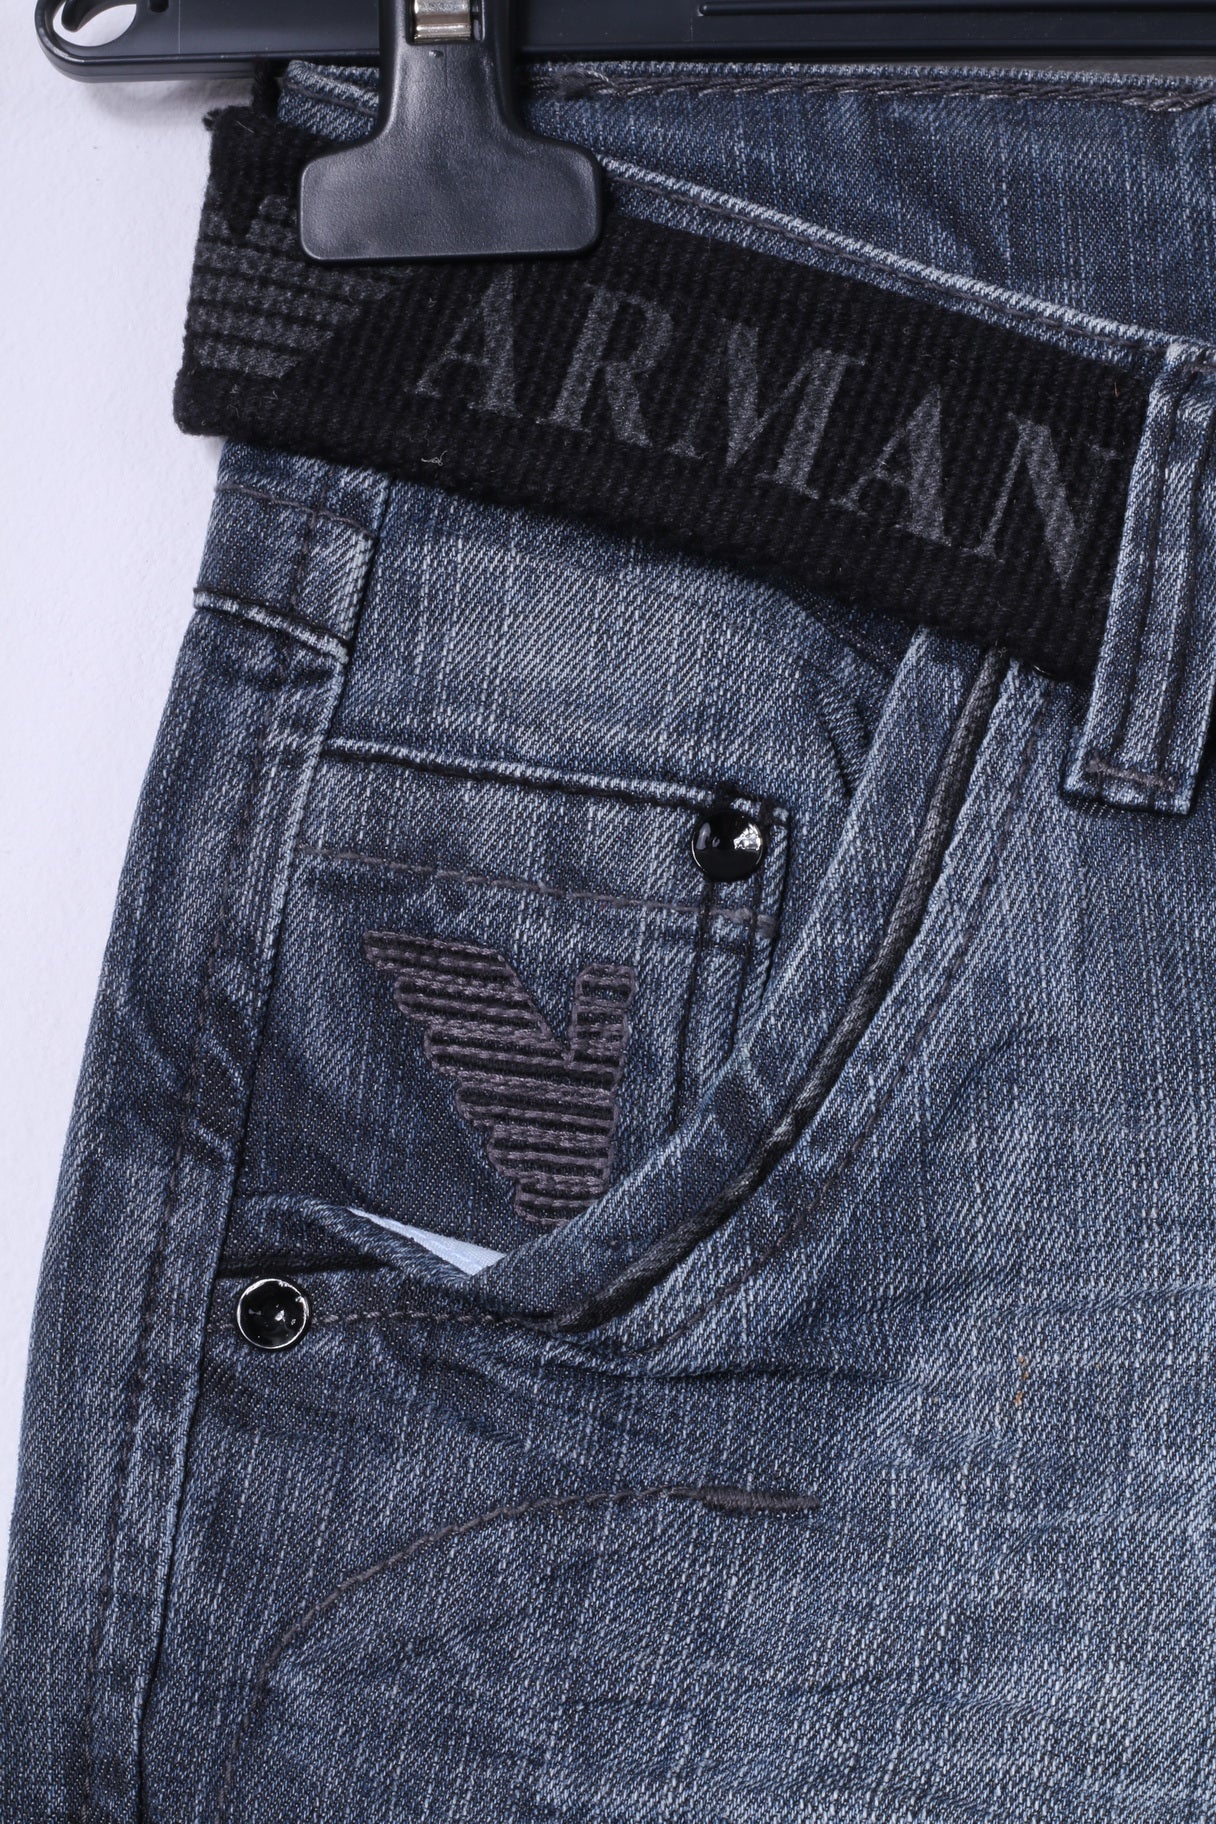 Armani Jeans Womens W27 L32 Trousers Navy Denim Cotton Straight Leg Pa ...